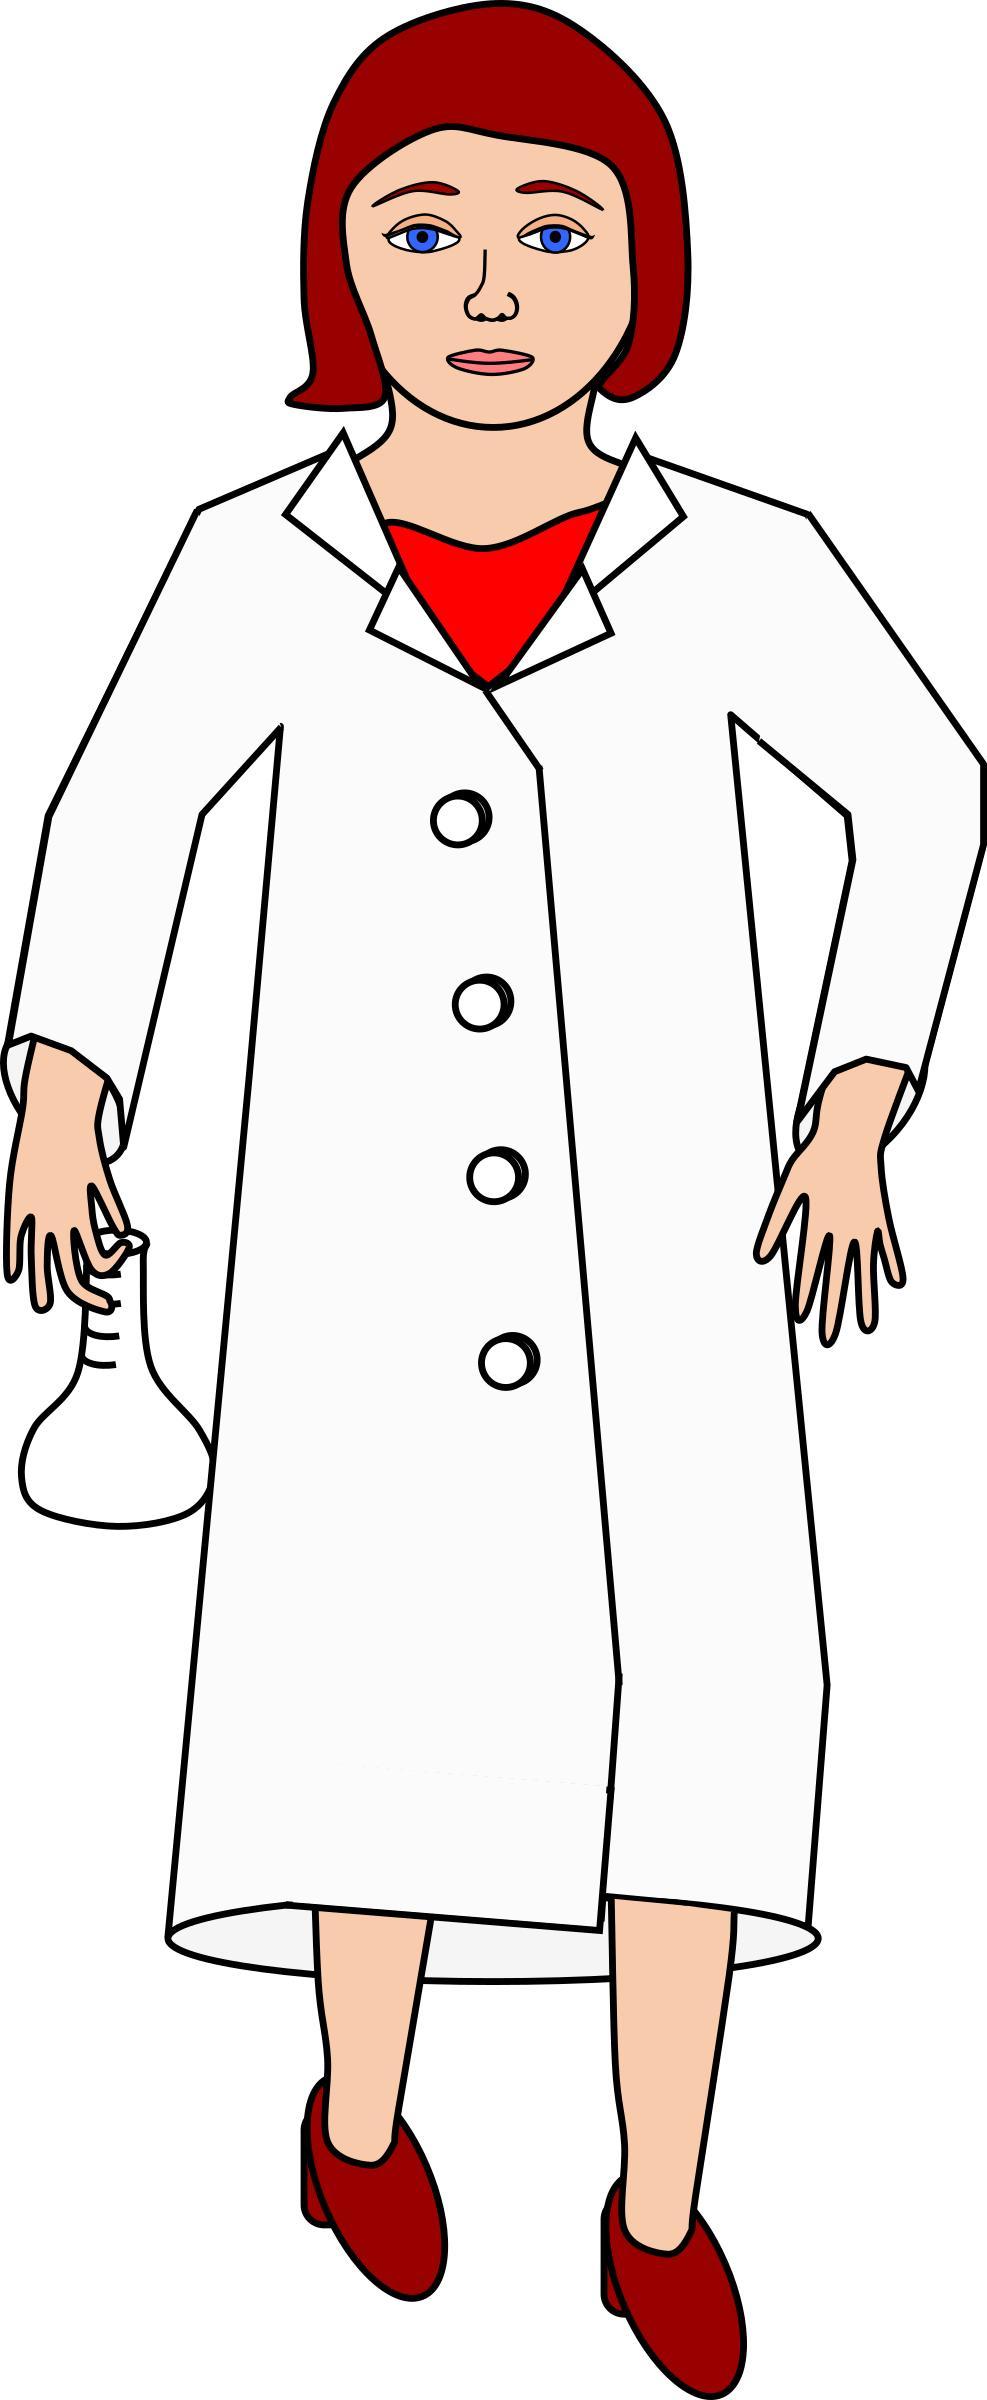 Scientist holding erlenmeyer flask png transparent